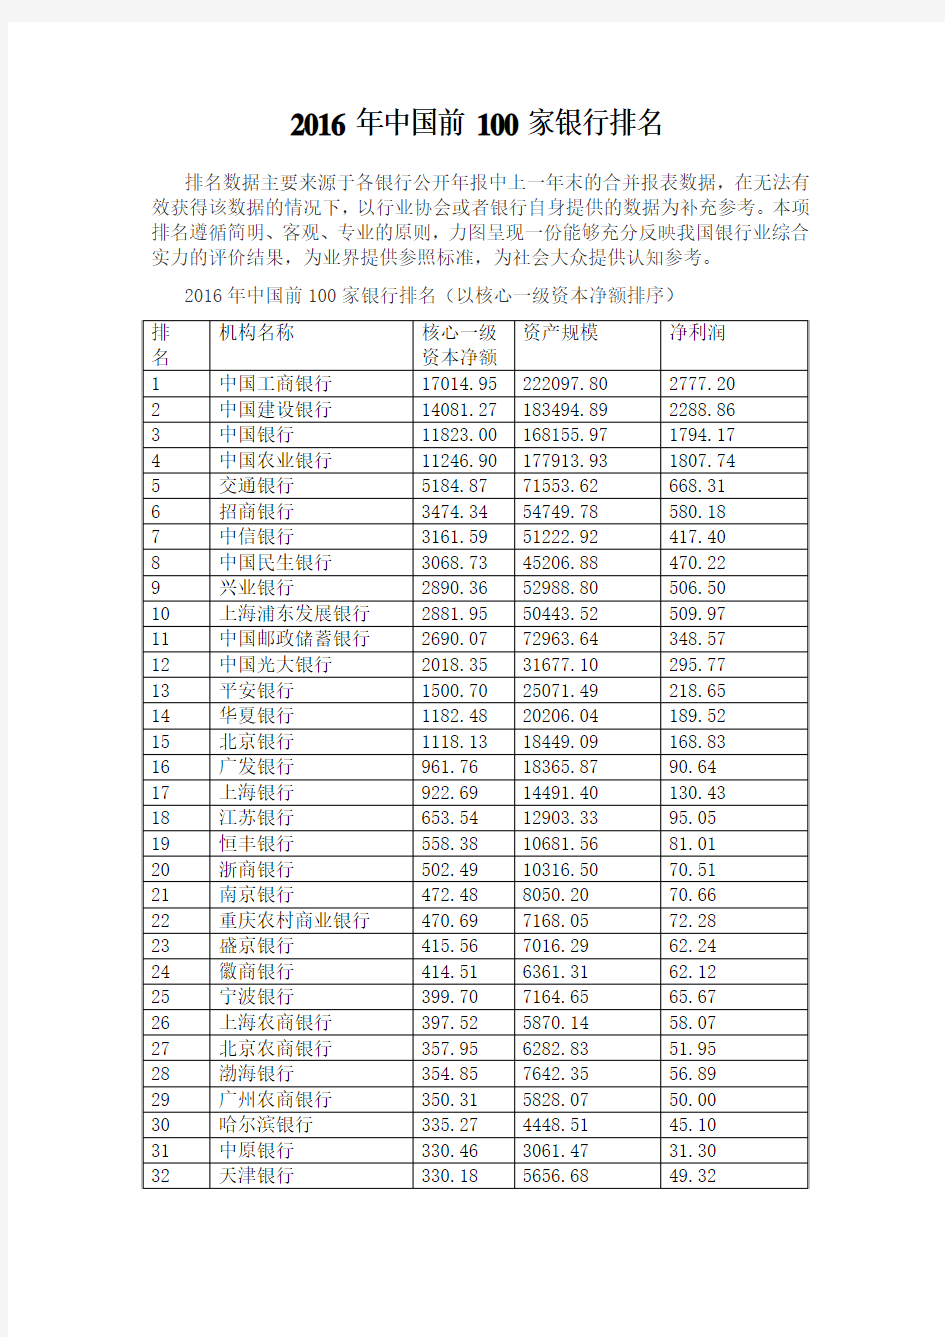 2016年中国前100家银行排名(附世界主流银行排名)